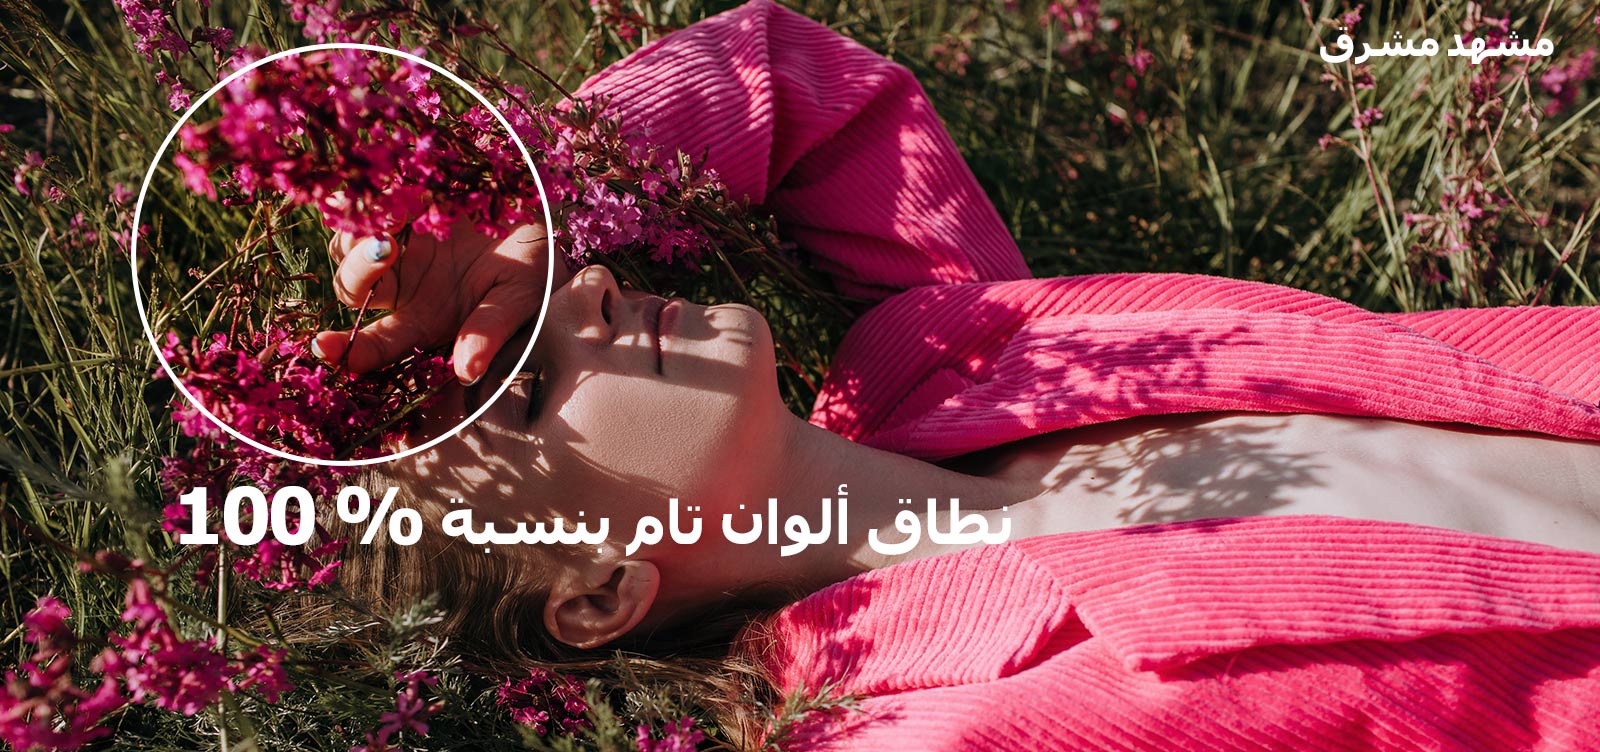 فيديو يظهر به فتاة صغيرة تضع يدها على عينيها أثناء اضجاعها في حقل عشبي به زهور وردية اللون. مع تشغيل الفيديو، تصبح الألوان أكثر ثراءً مع زيادة مؤشر نسبة نطاق الألوان من 70% إلى 100%.